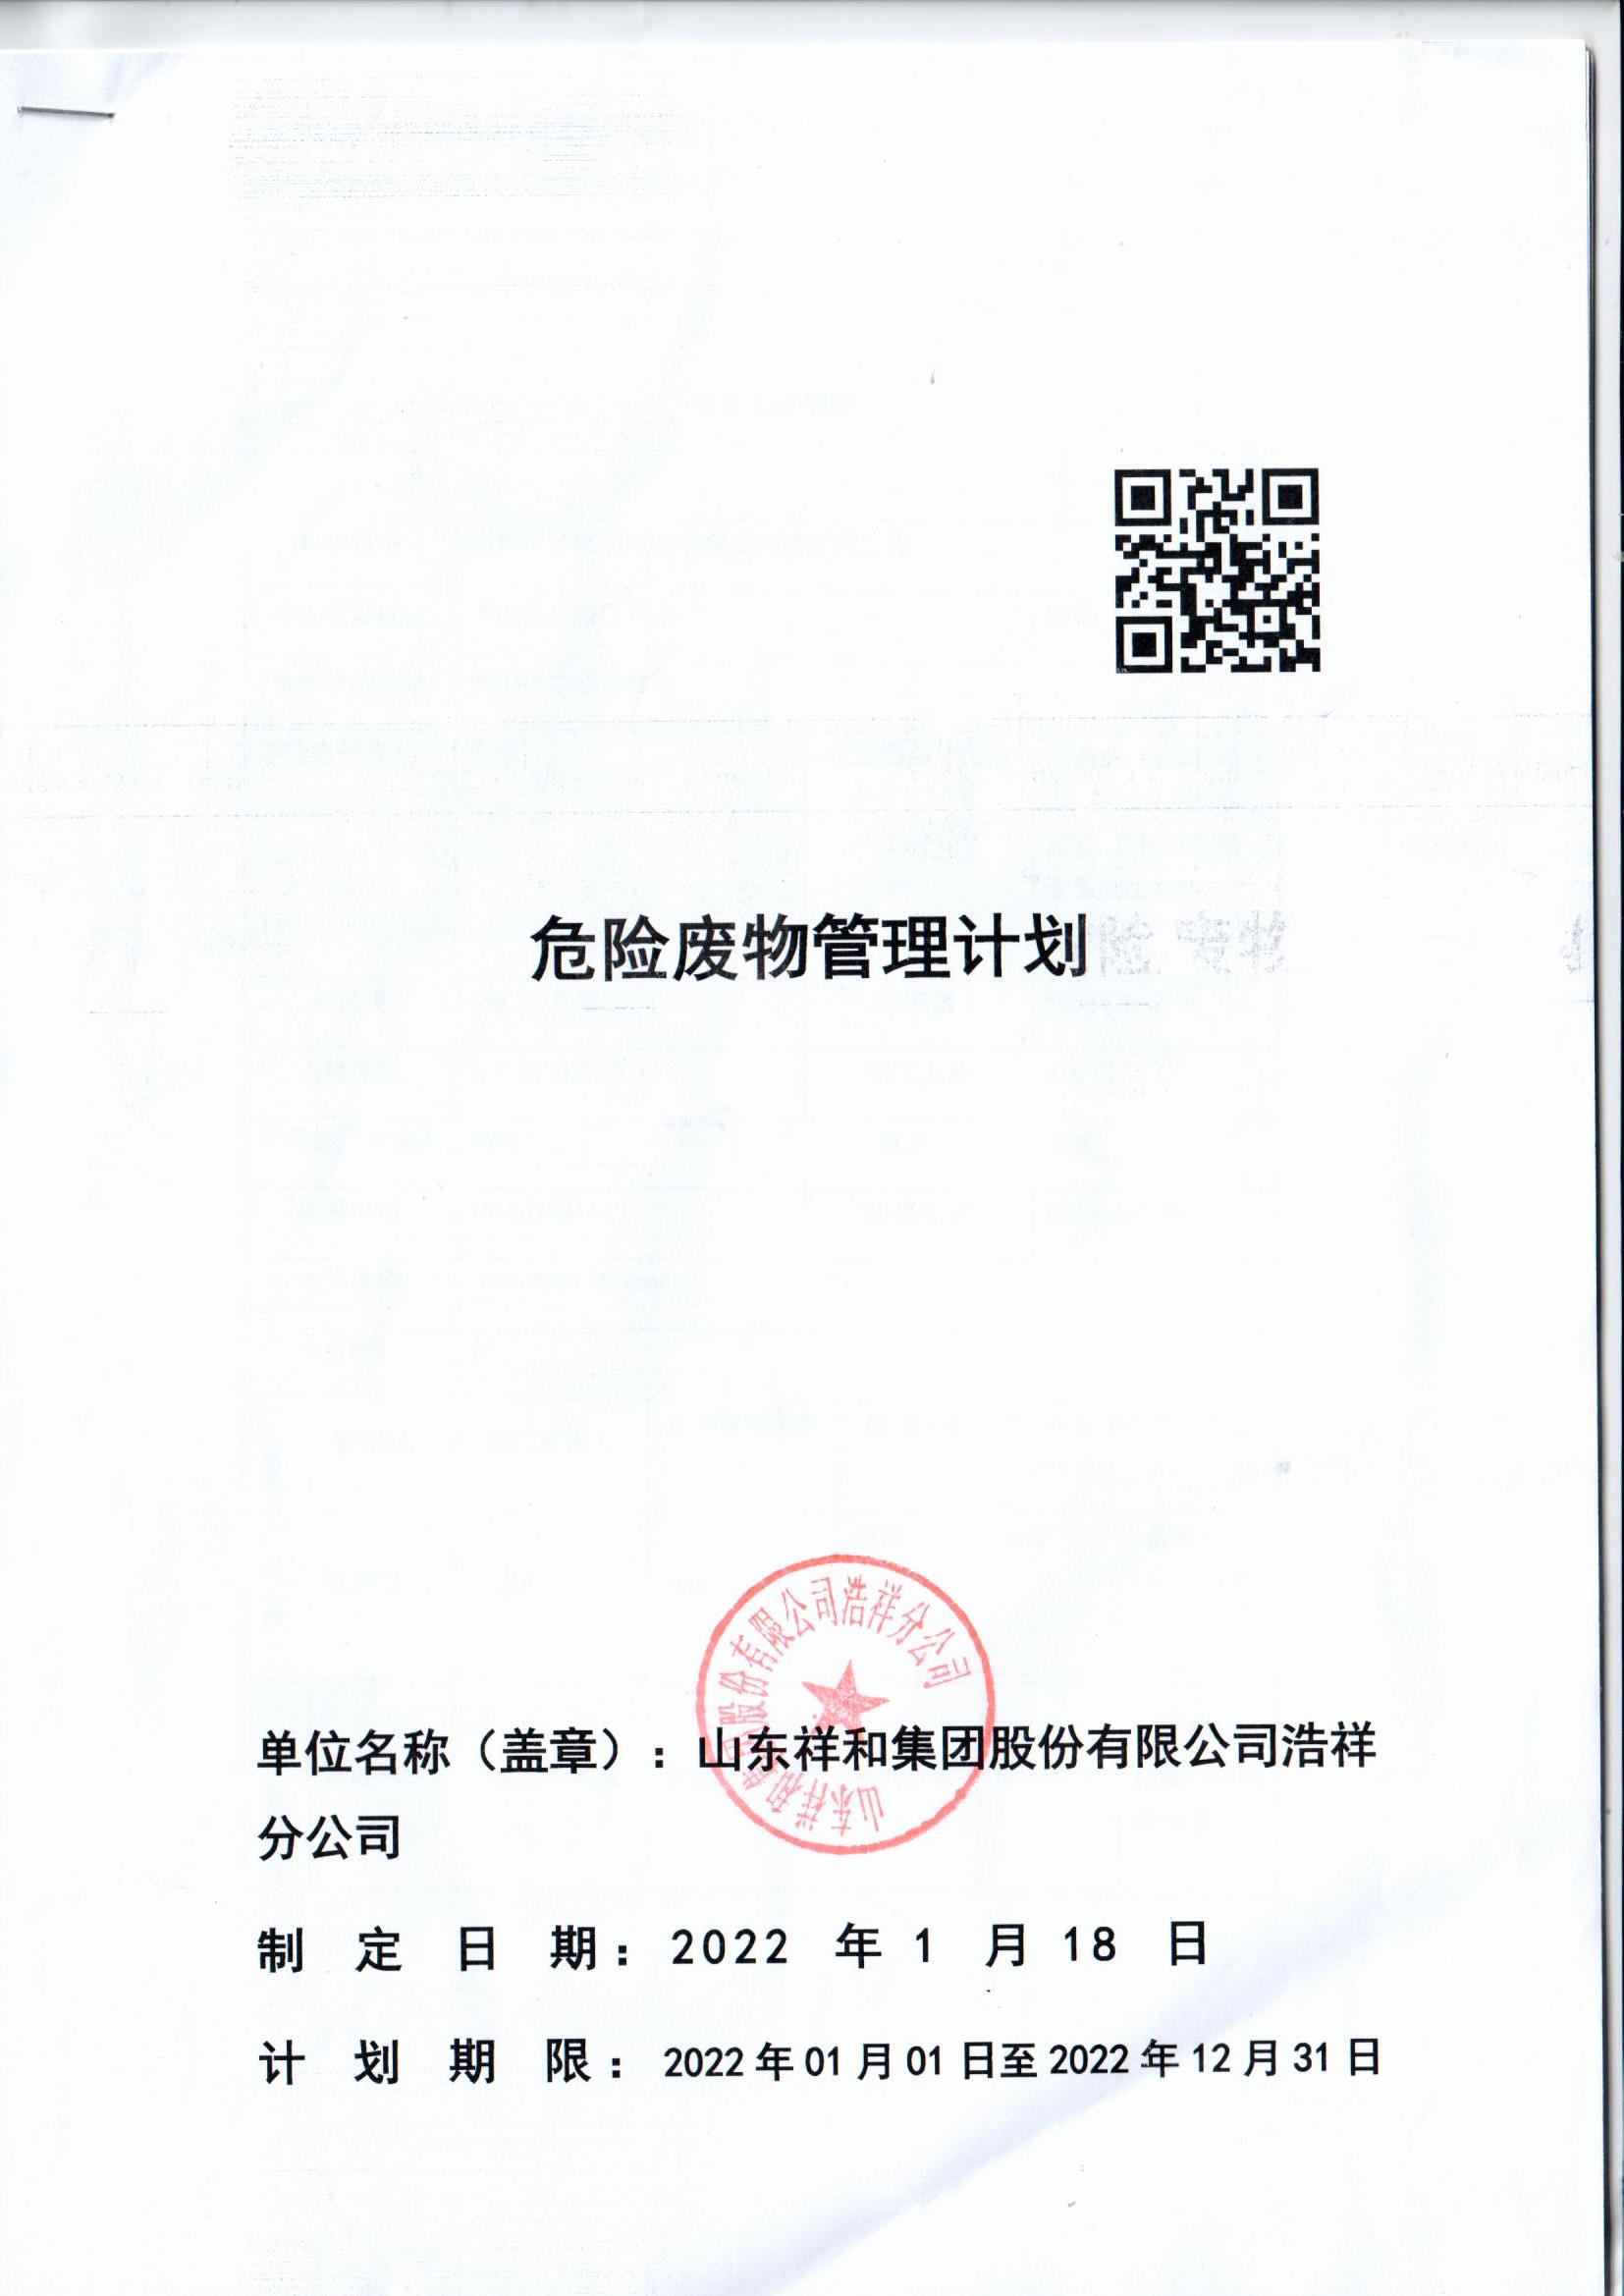 球火体育（中国）集团浩祥分公司2022年度危险废物管理信息公开